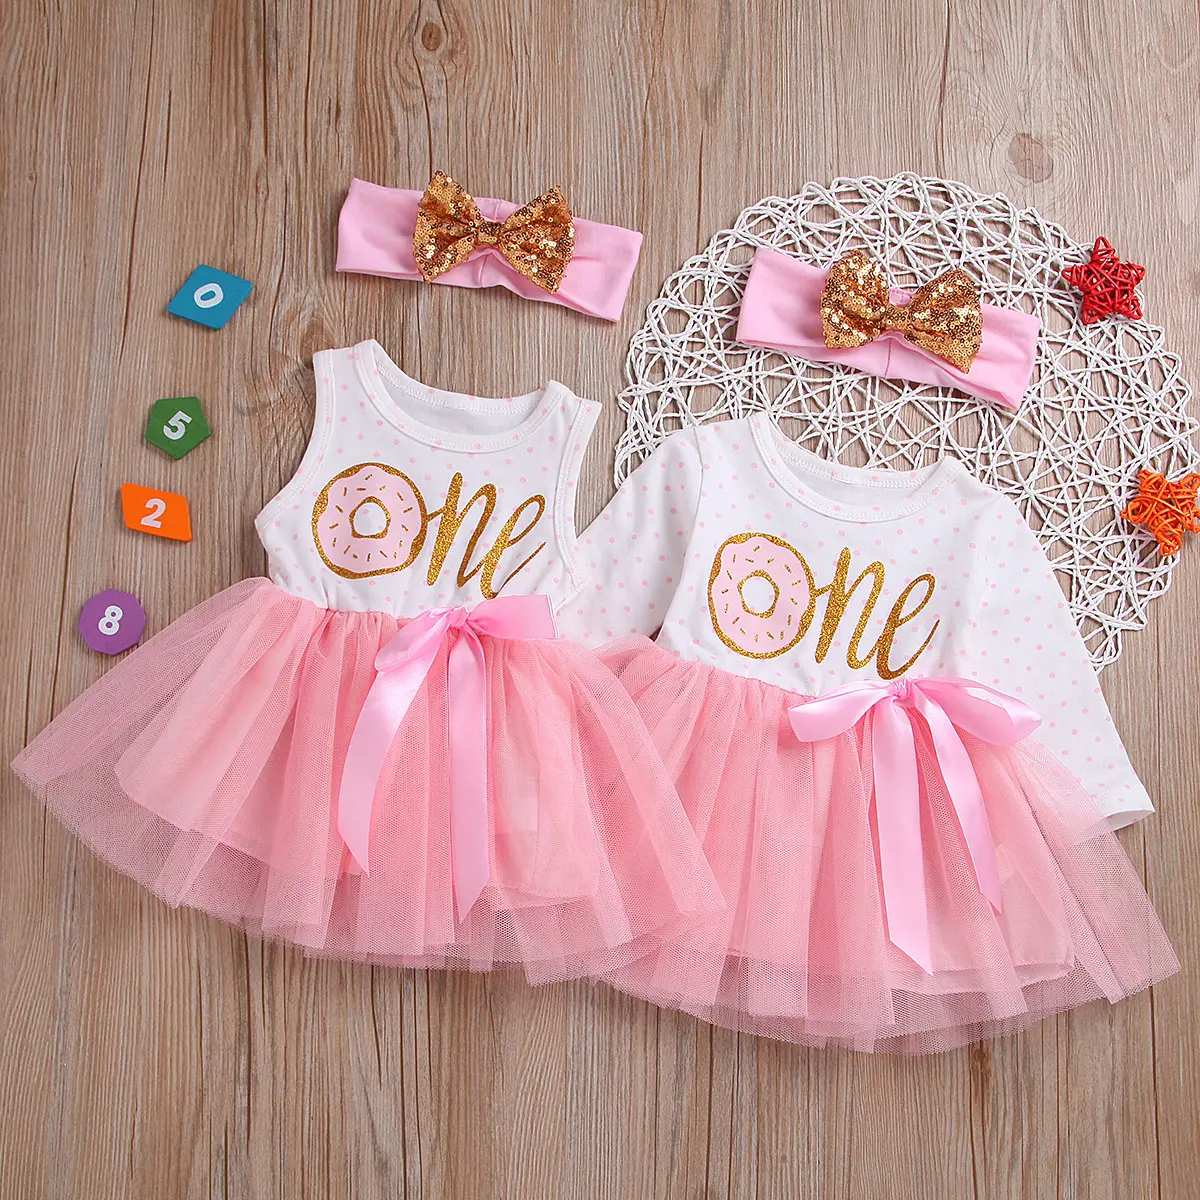 NIMBLE Print Disney Prinzessinnen Baumwoll kleid Mädchen Kleidung Infant Party Kleid Festzug Kleider Kleinkind Uniformen Röcke